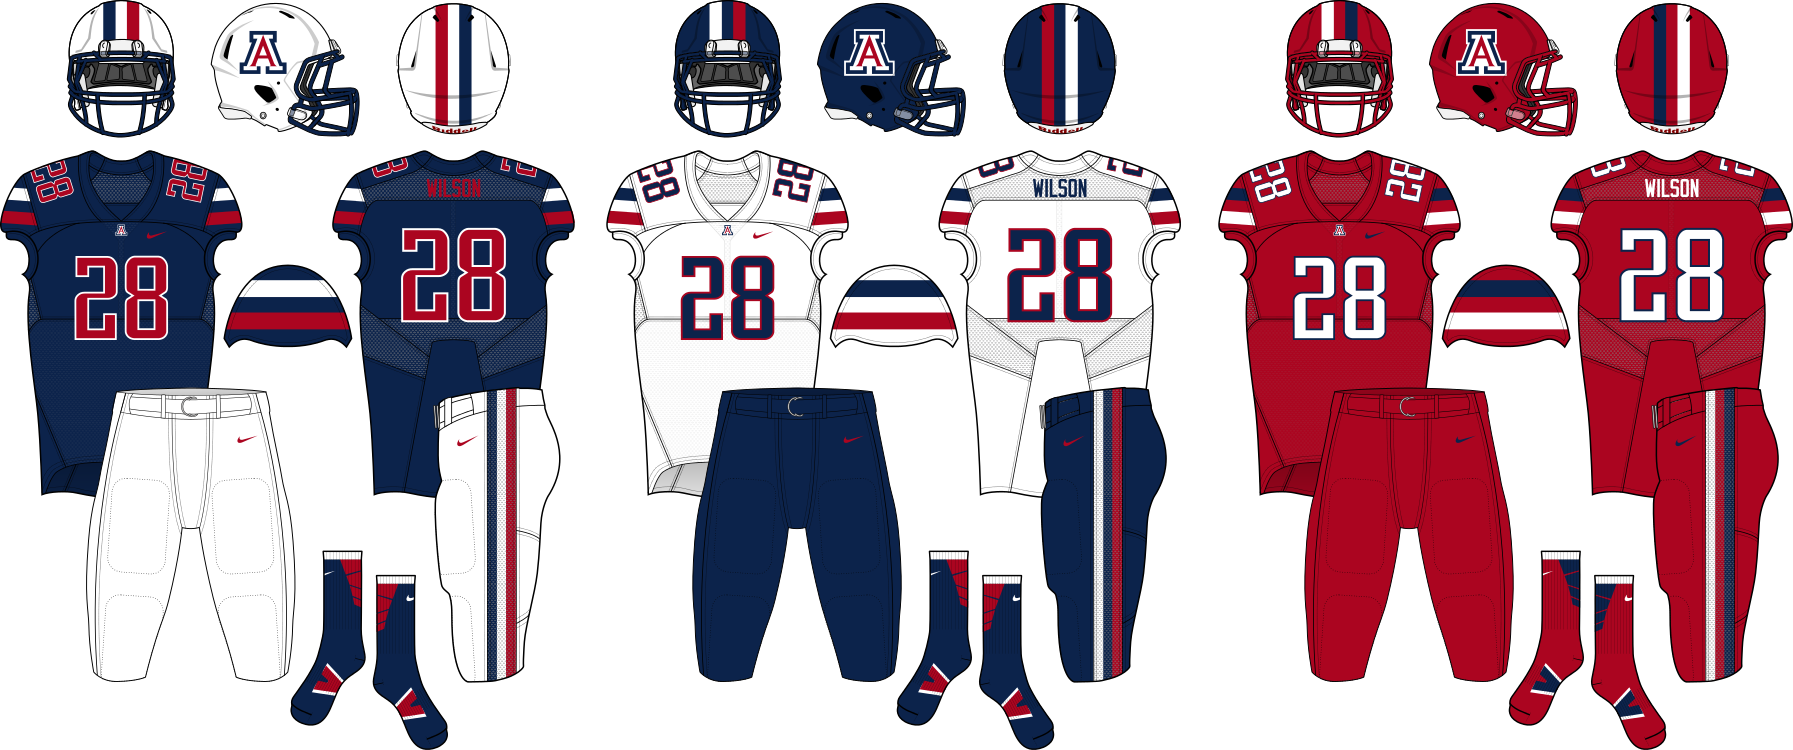 Arizona Wildcats - Arizona Wildcats Football Uniform Concepts (1793x750), Png Download